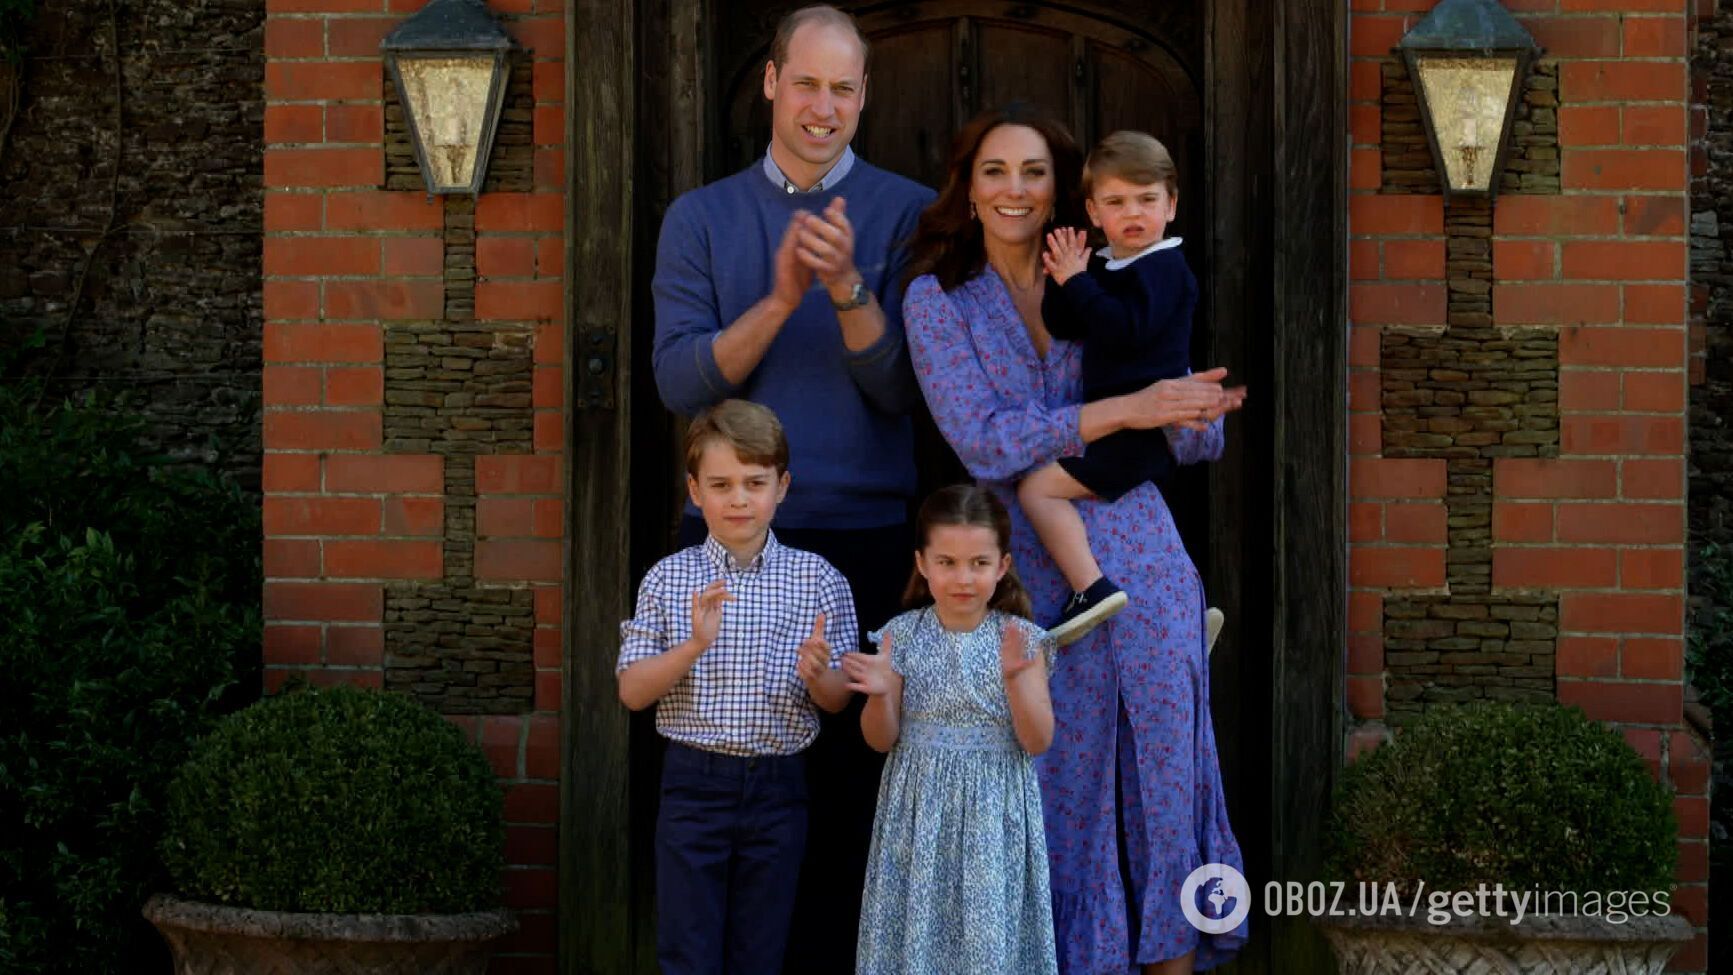 Кейт Миддлтон беременна в четвертый раз: об этом знали покойная королева Елизавета II и король Чарльз III – СМИ